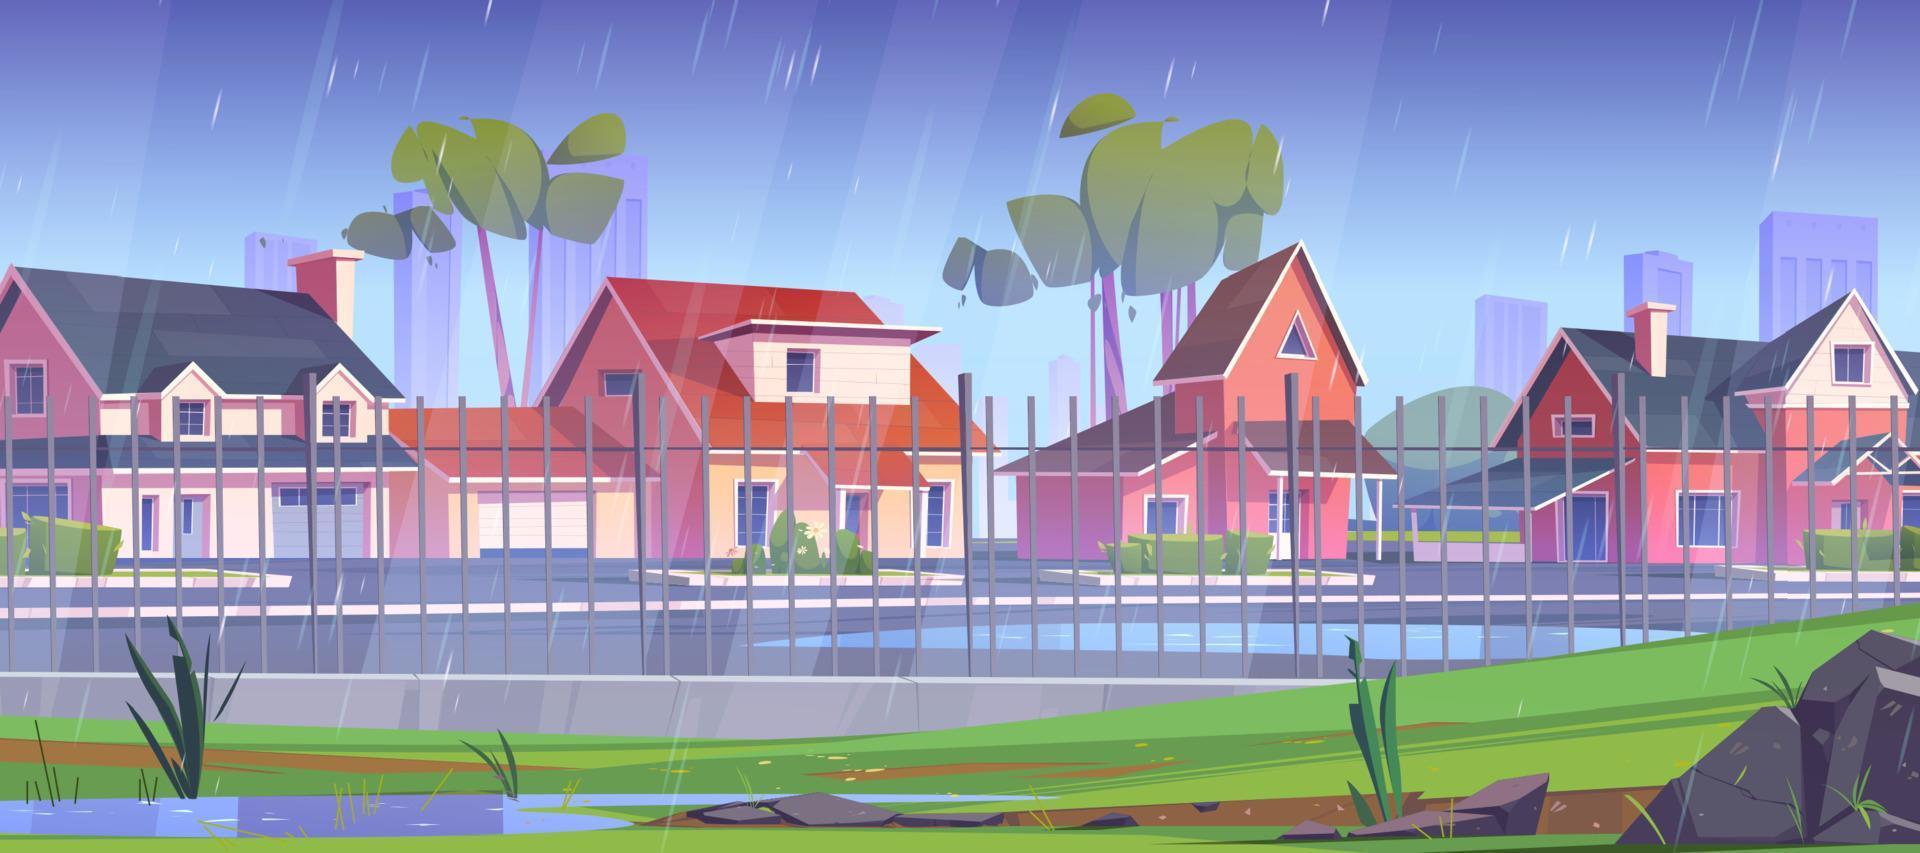 förorts område på regn, gata med stuga hus vektor